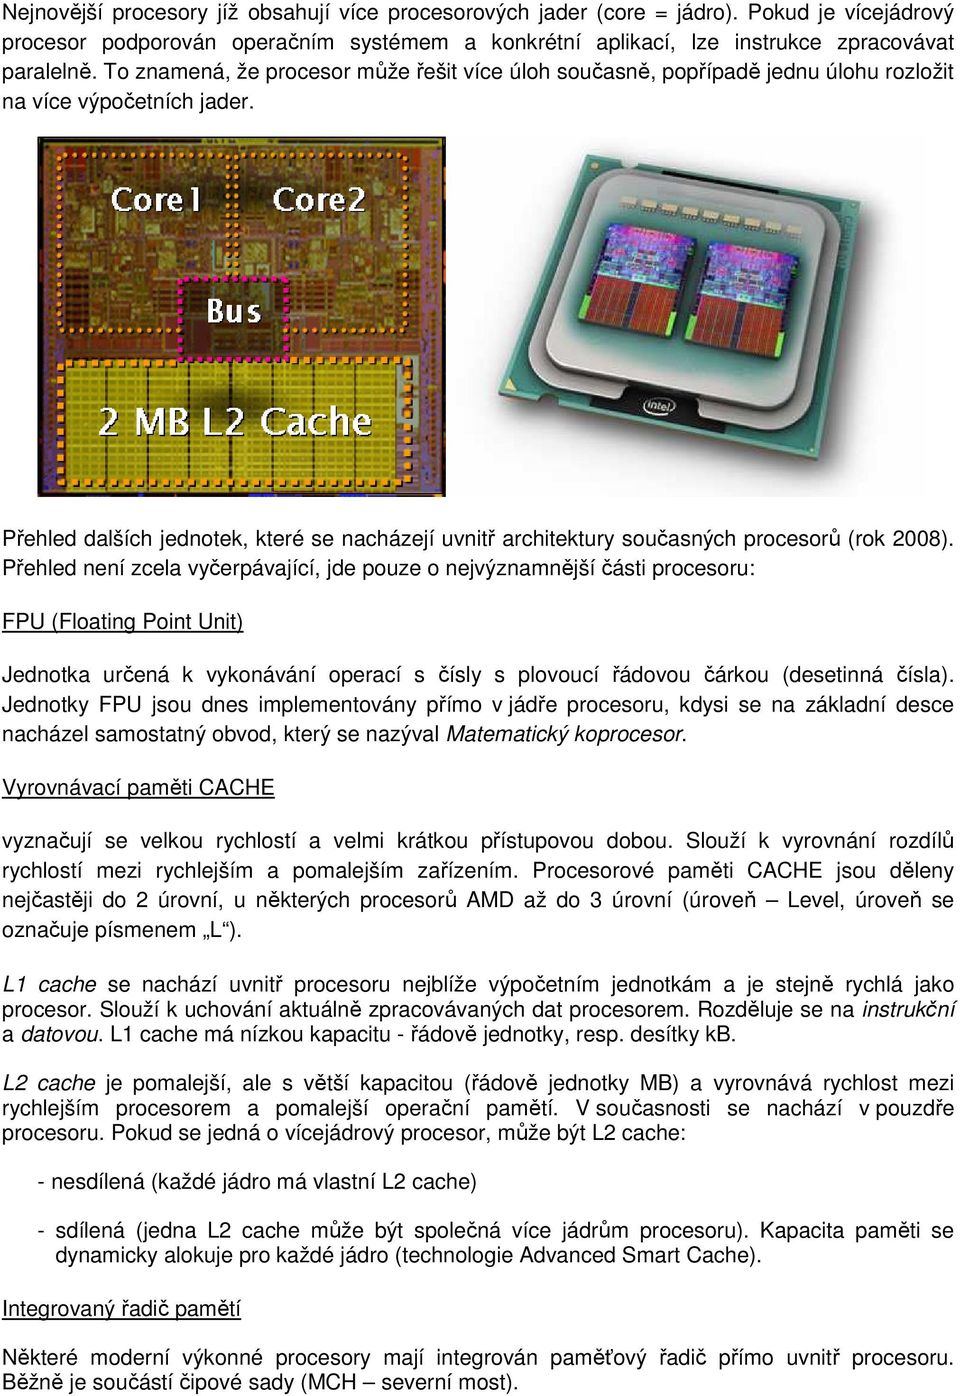 Přehled dalších jednotek, které se nacházejí uvnitř architektury současných procesorů (rok 2008).